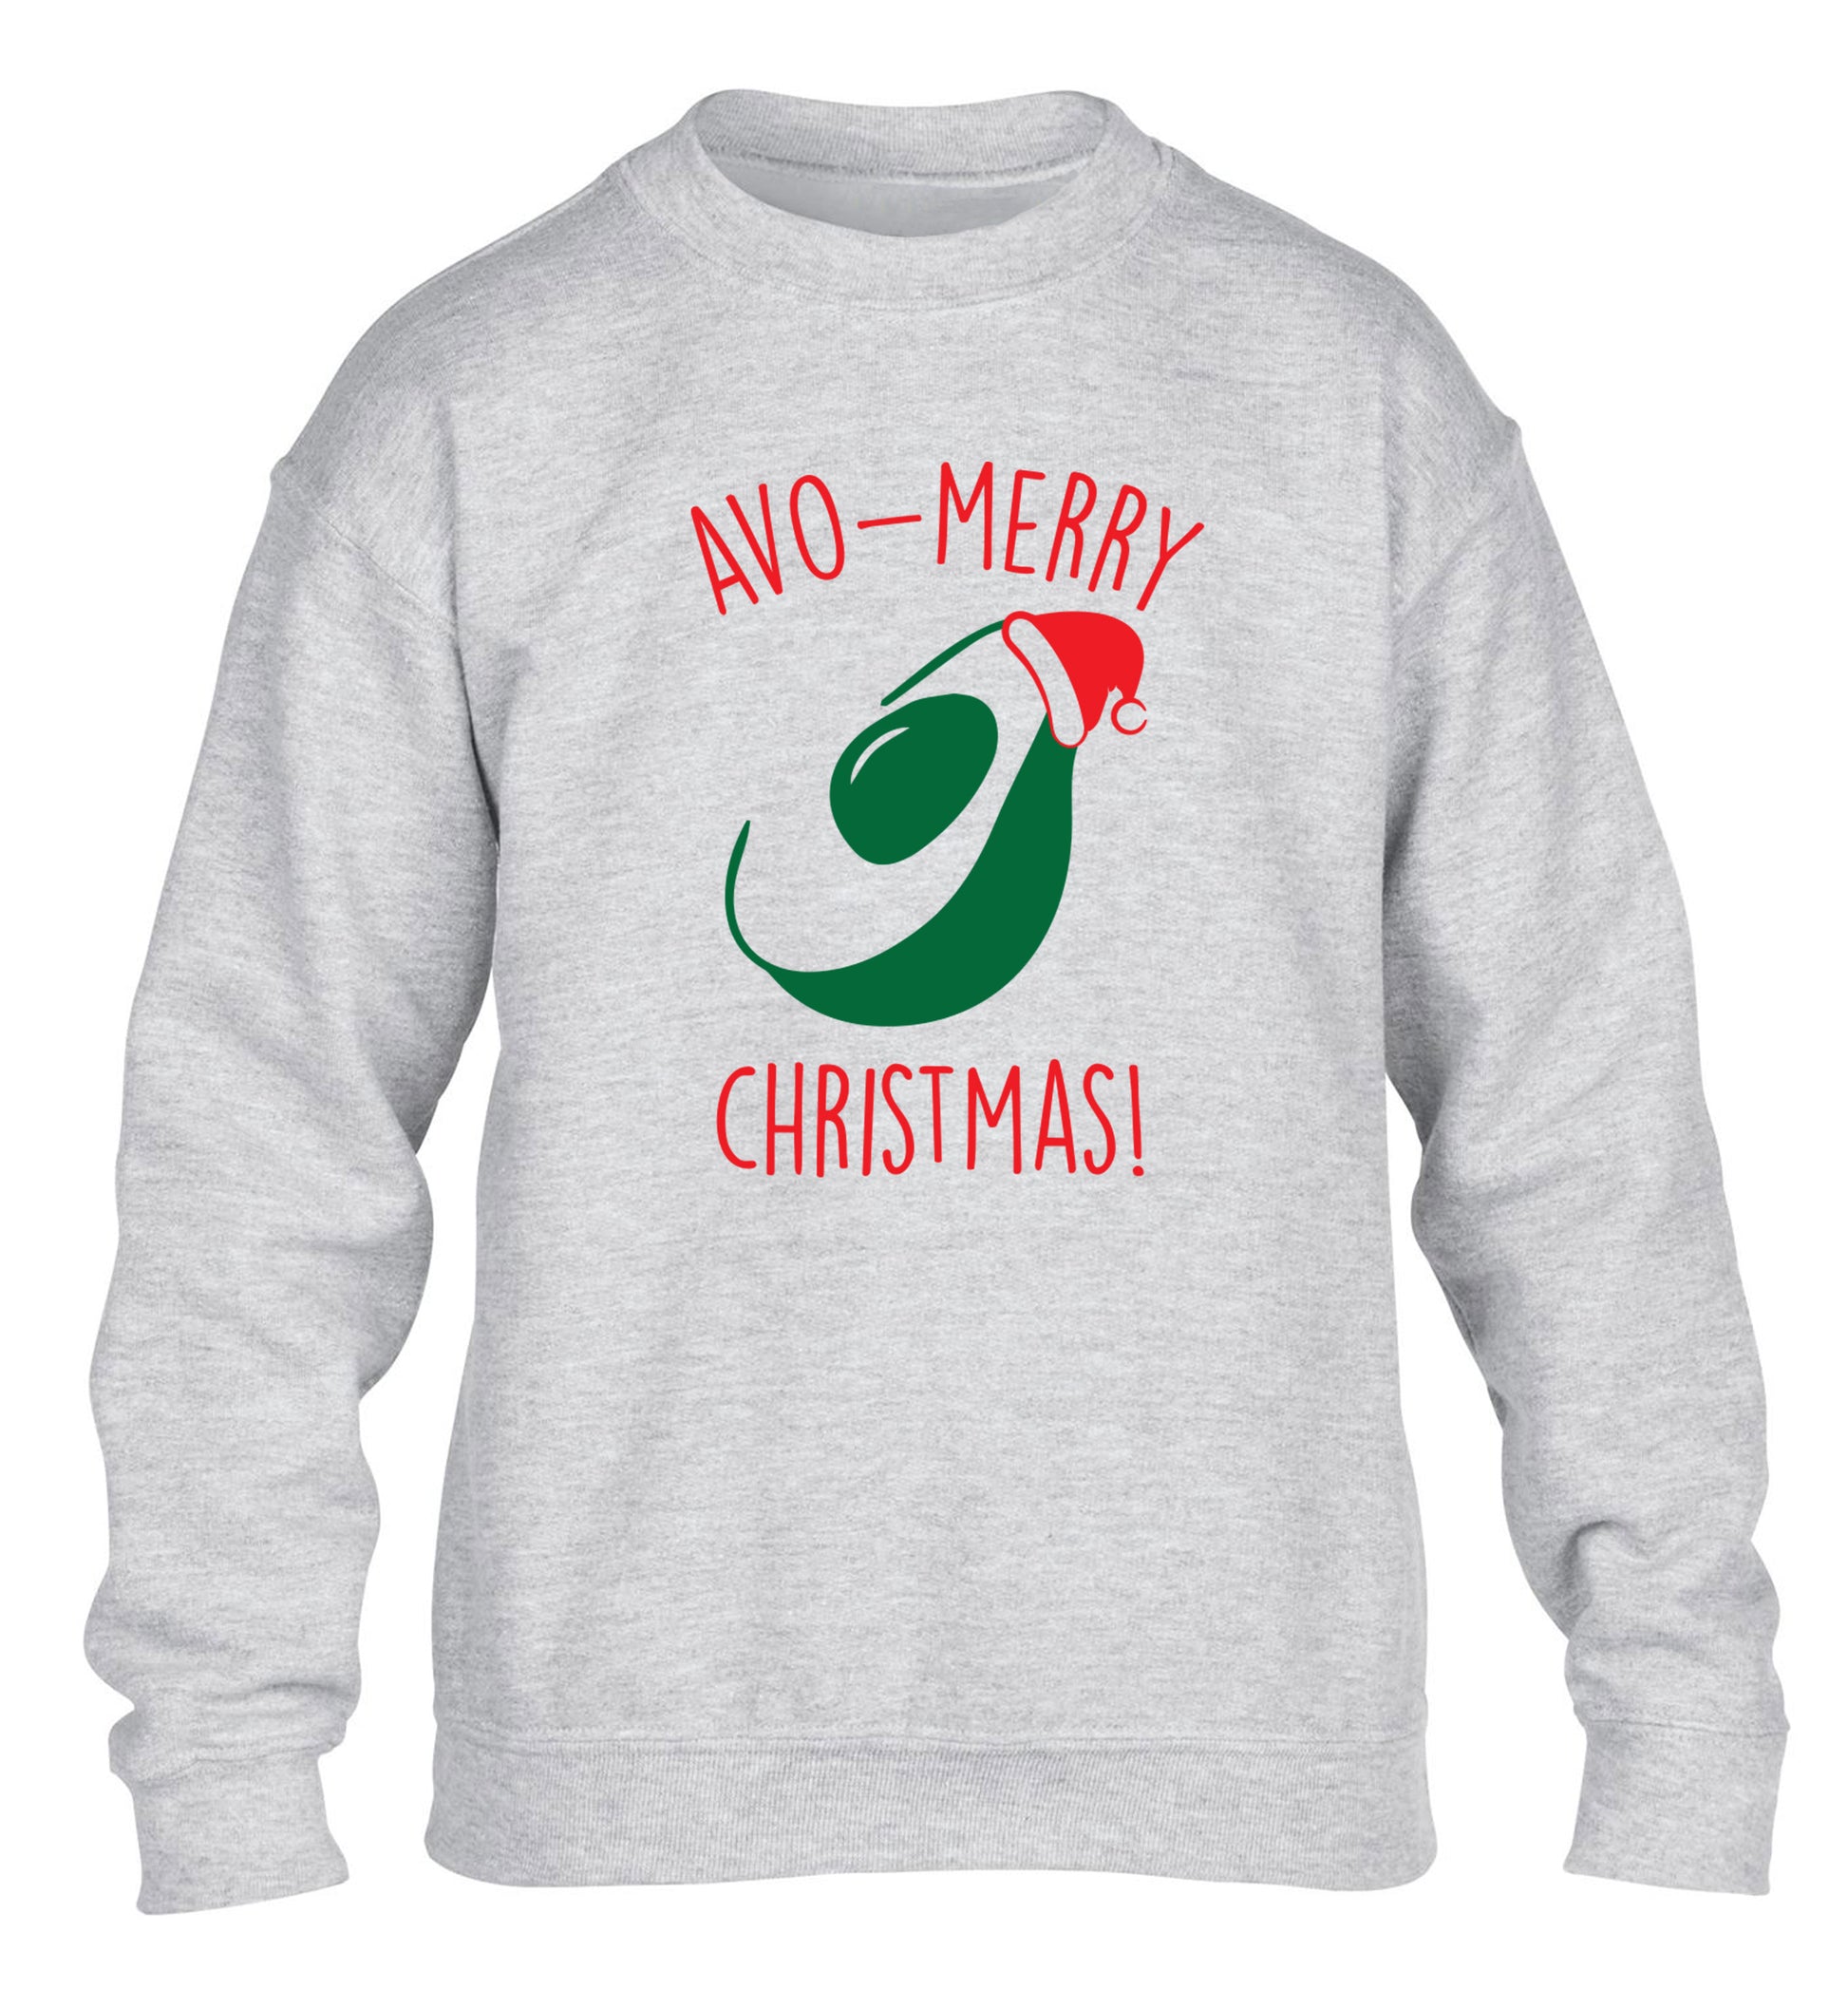 Avo-Merry Christmas children's grey sweater 12-13 Years